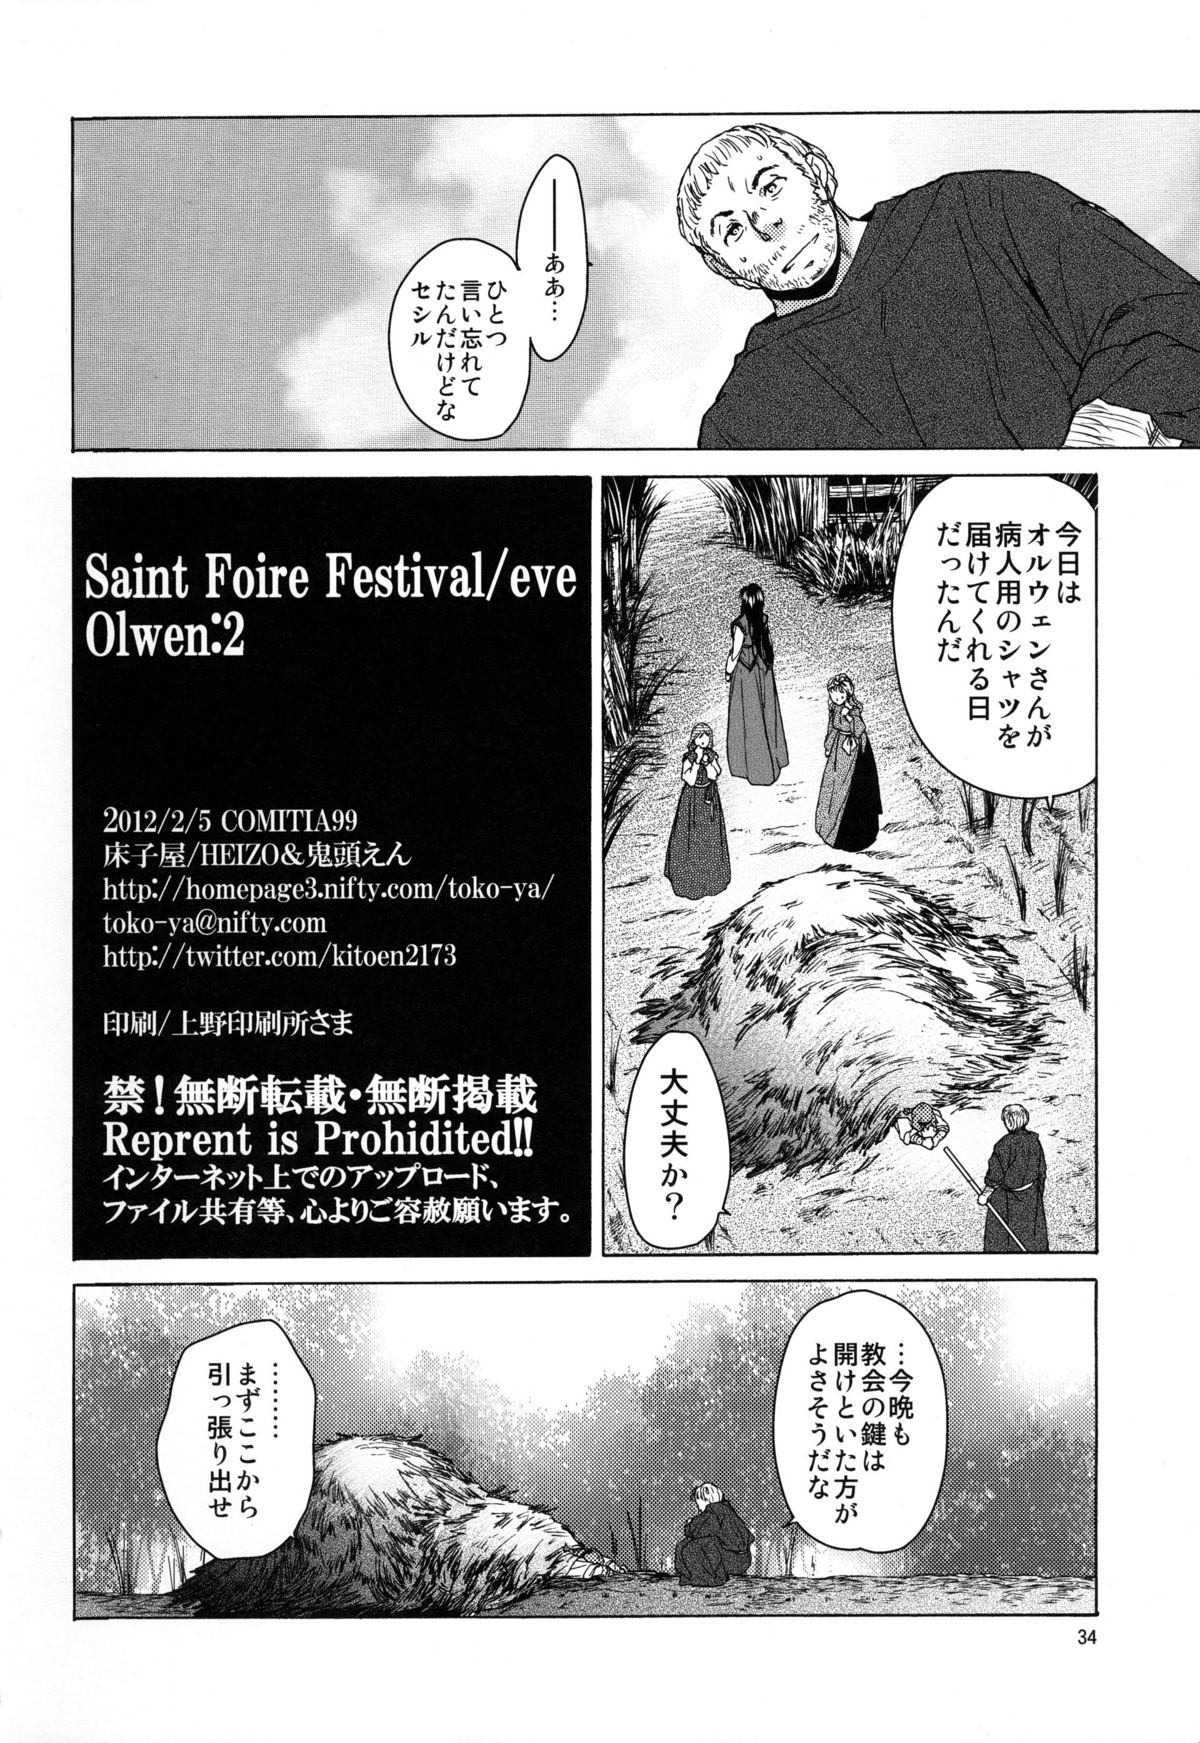 [床子屋 (HEIZO, 鬼頭えん)] Saint Foire Festival/eve Olwen:2